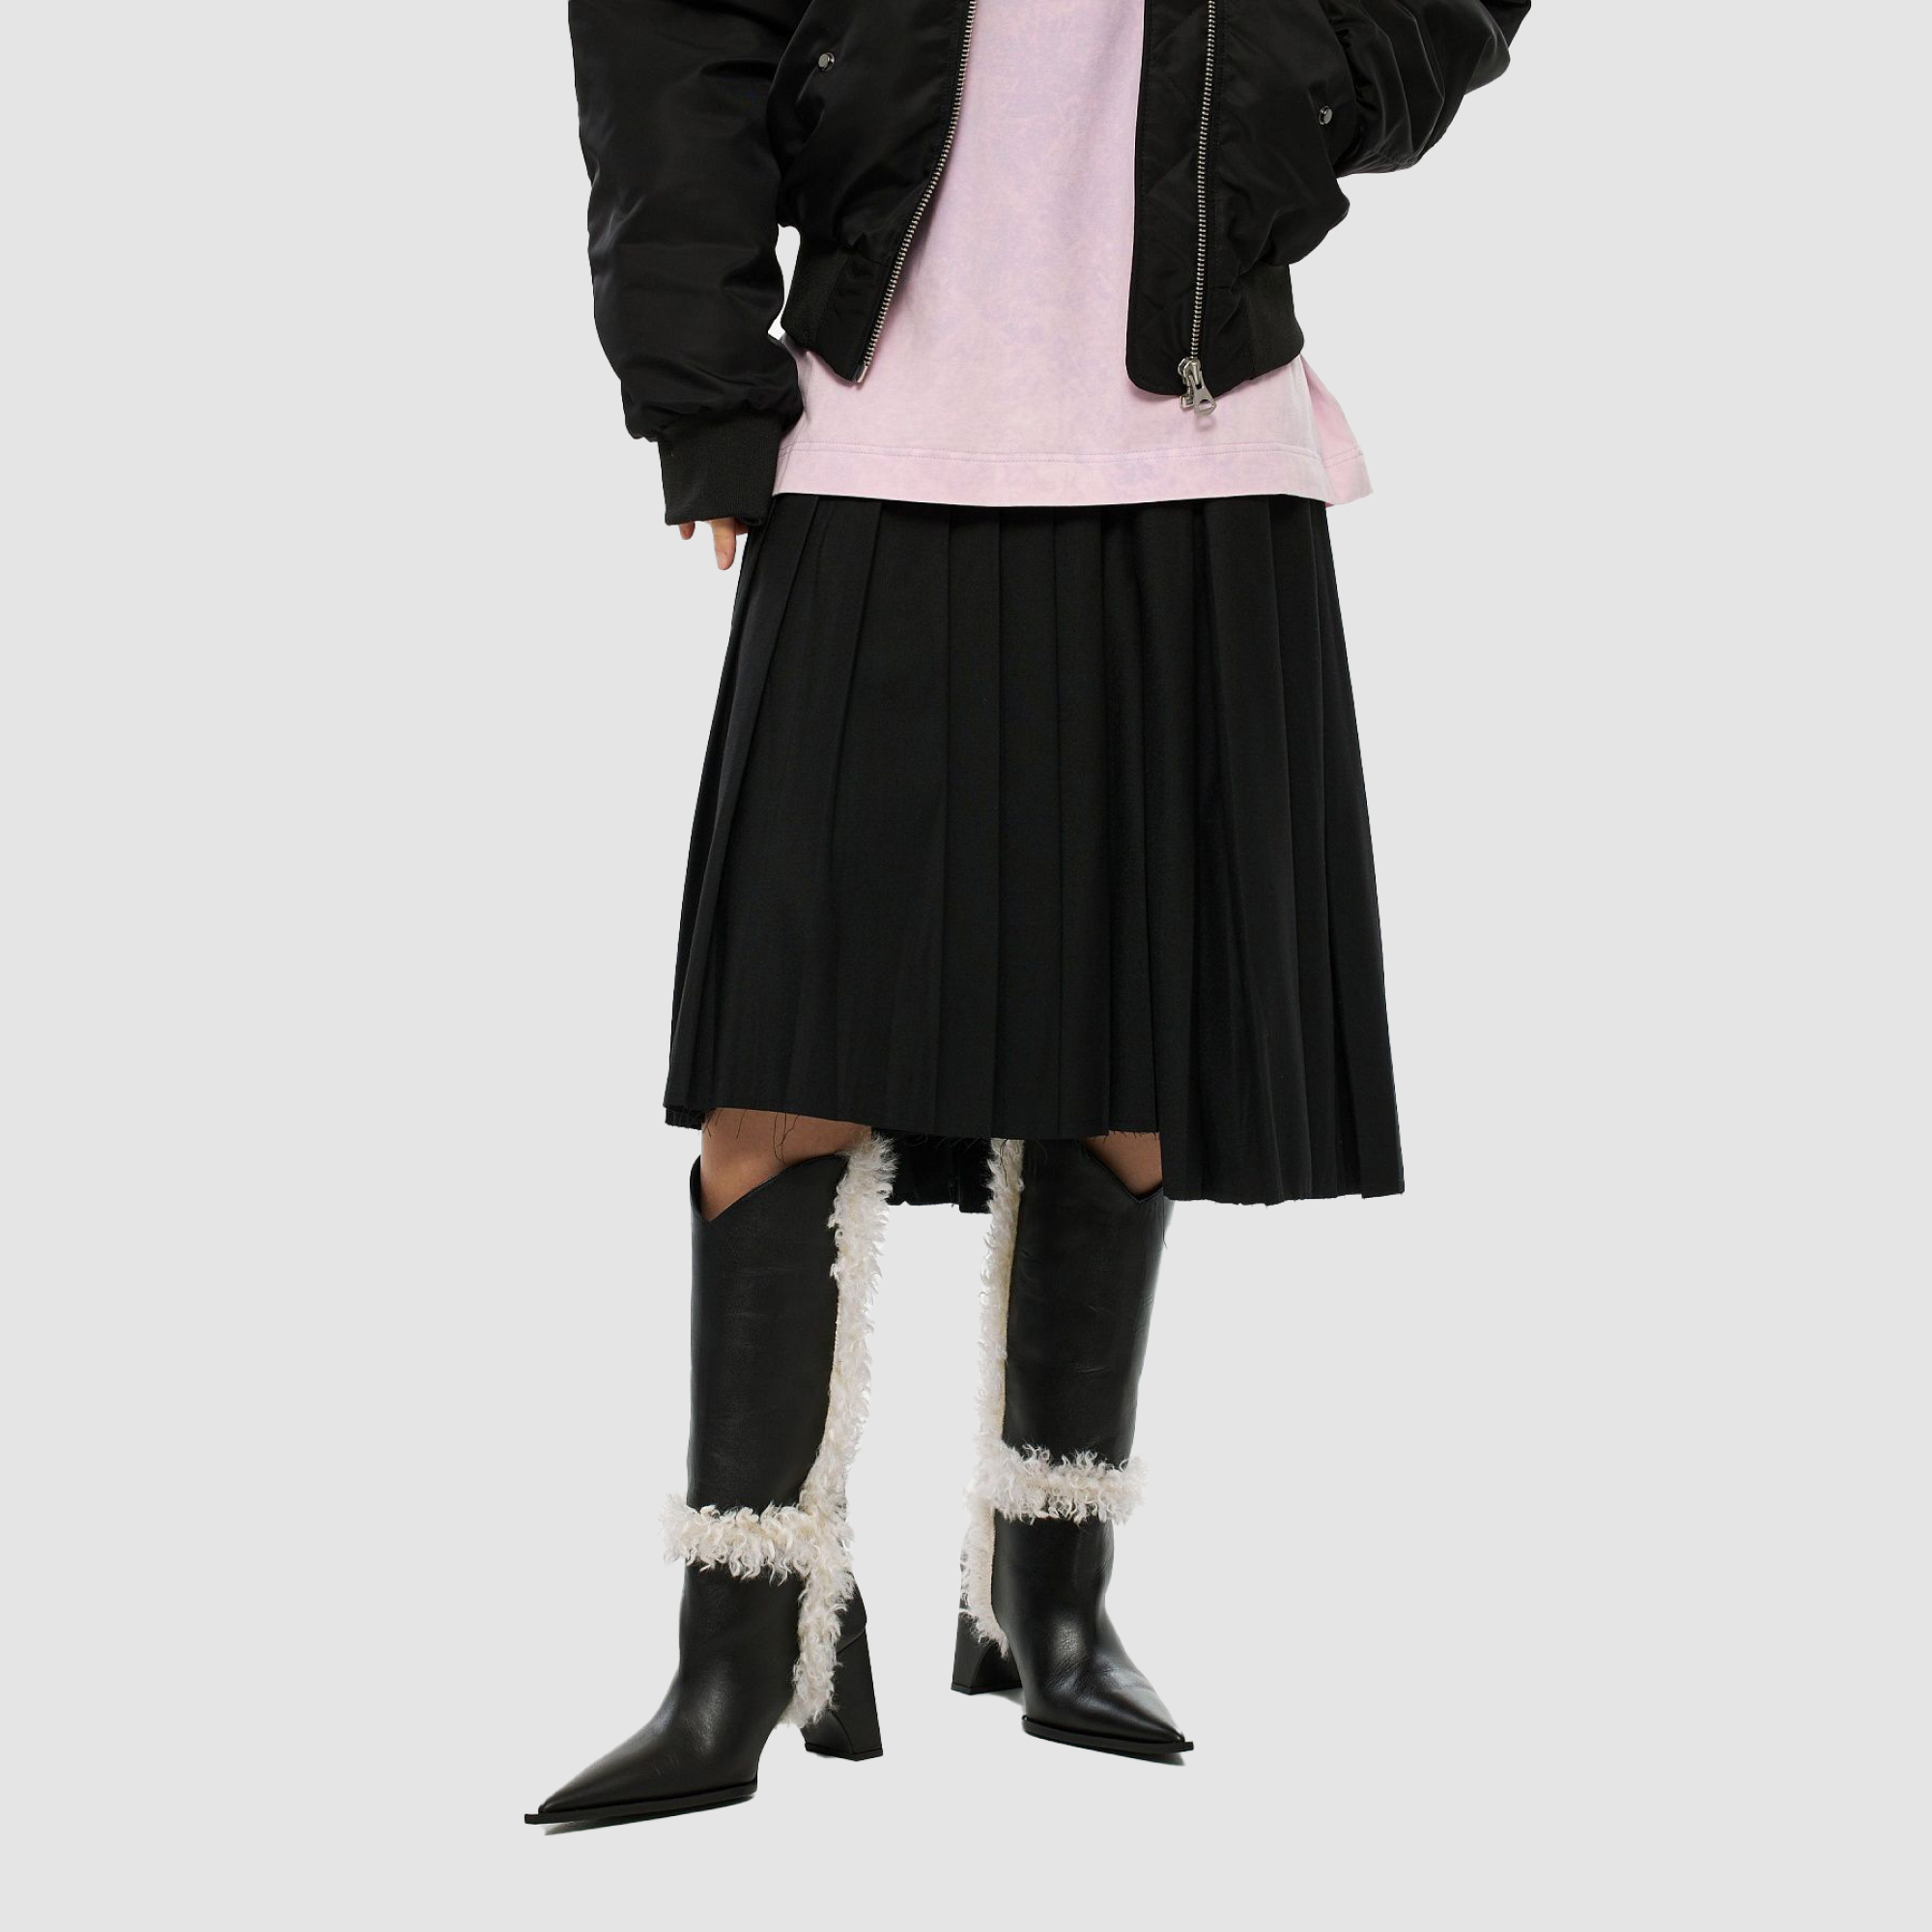 Брюки-парашюты и юбки из фактурного трикотажа: какой низ носить осенью и зимой? Выбор BURO. (фото 35)